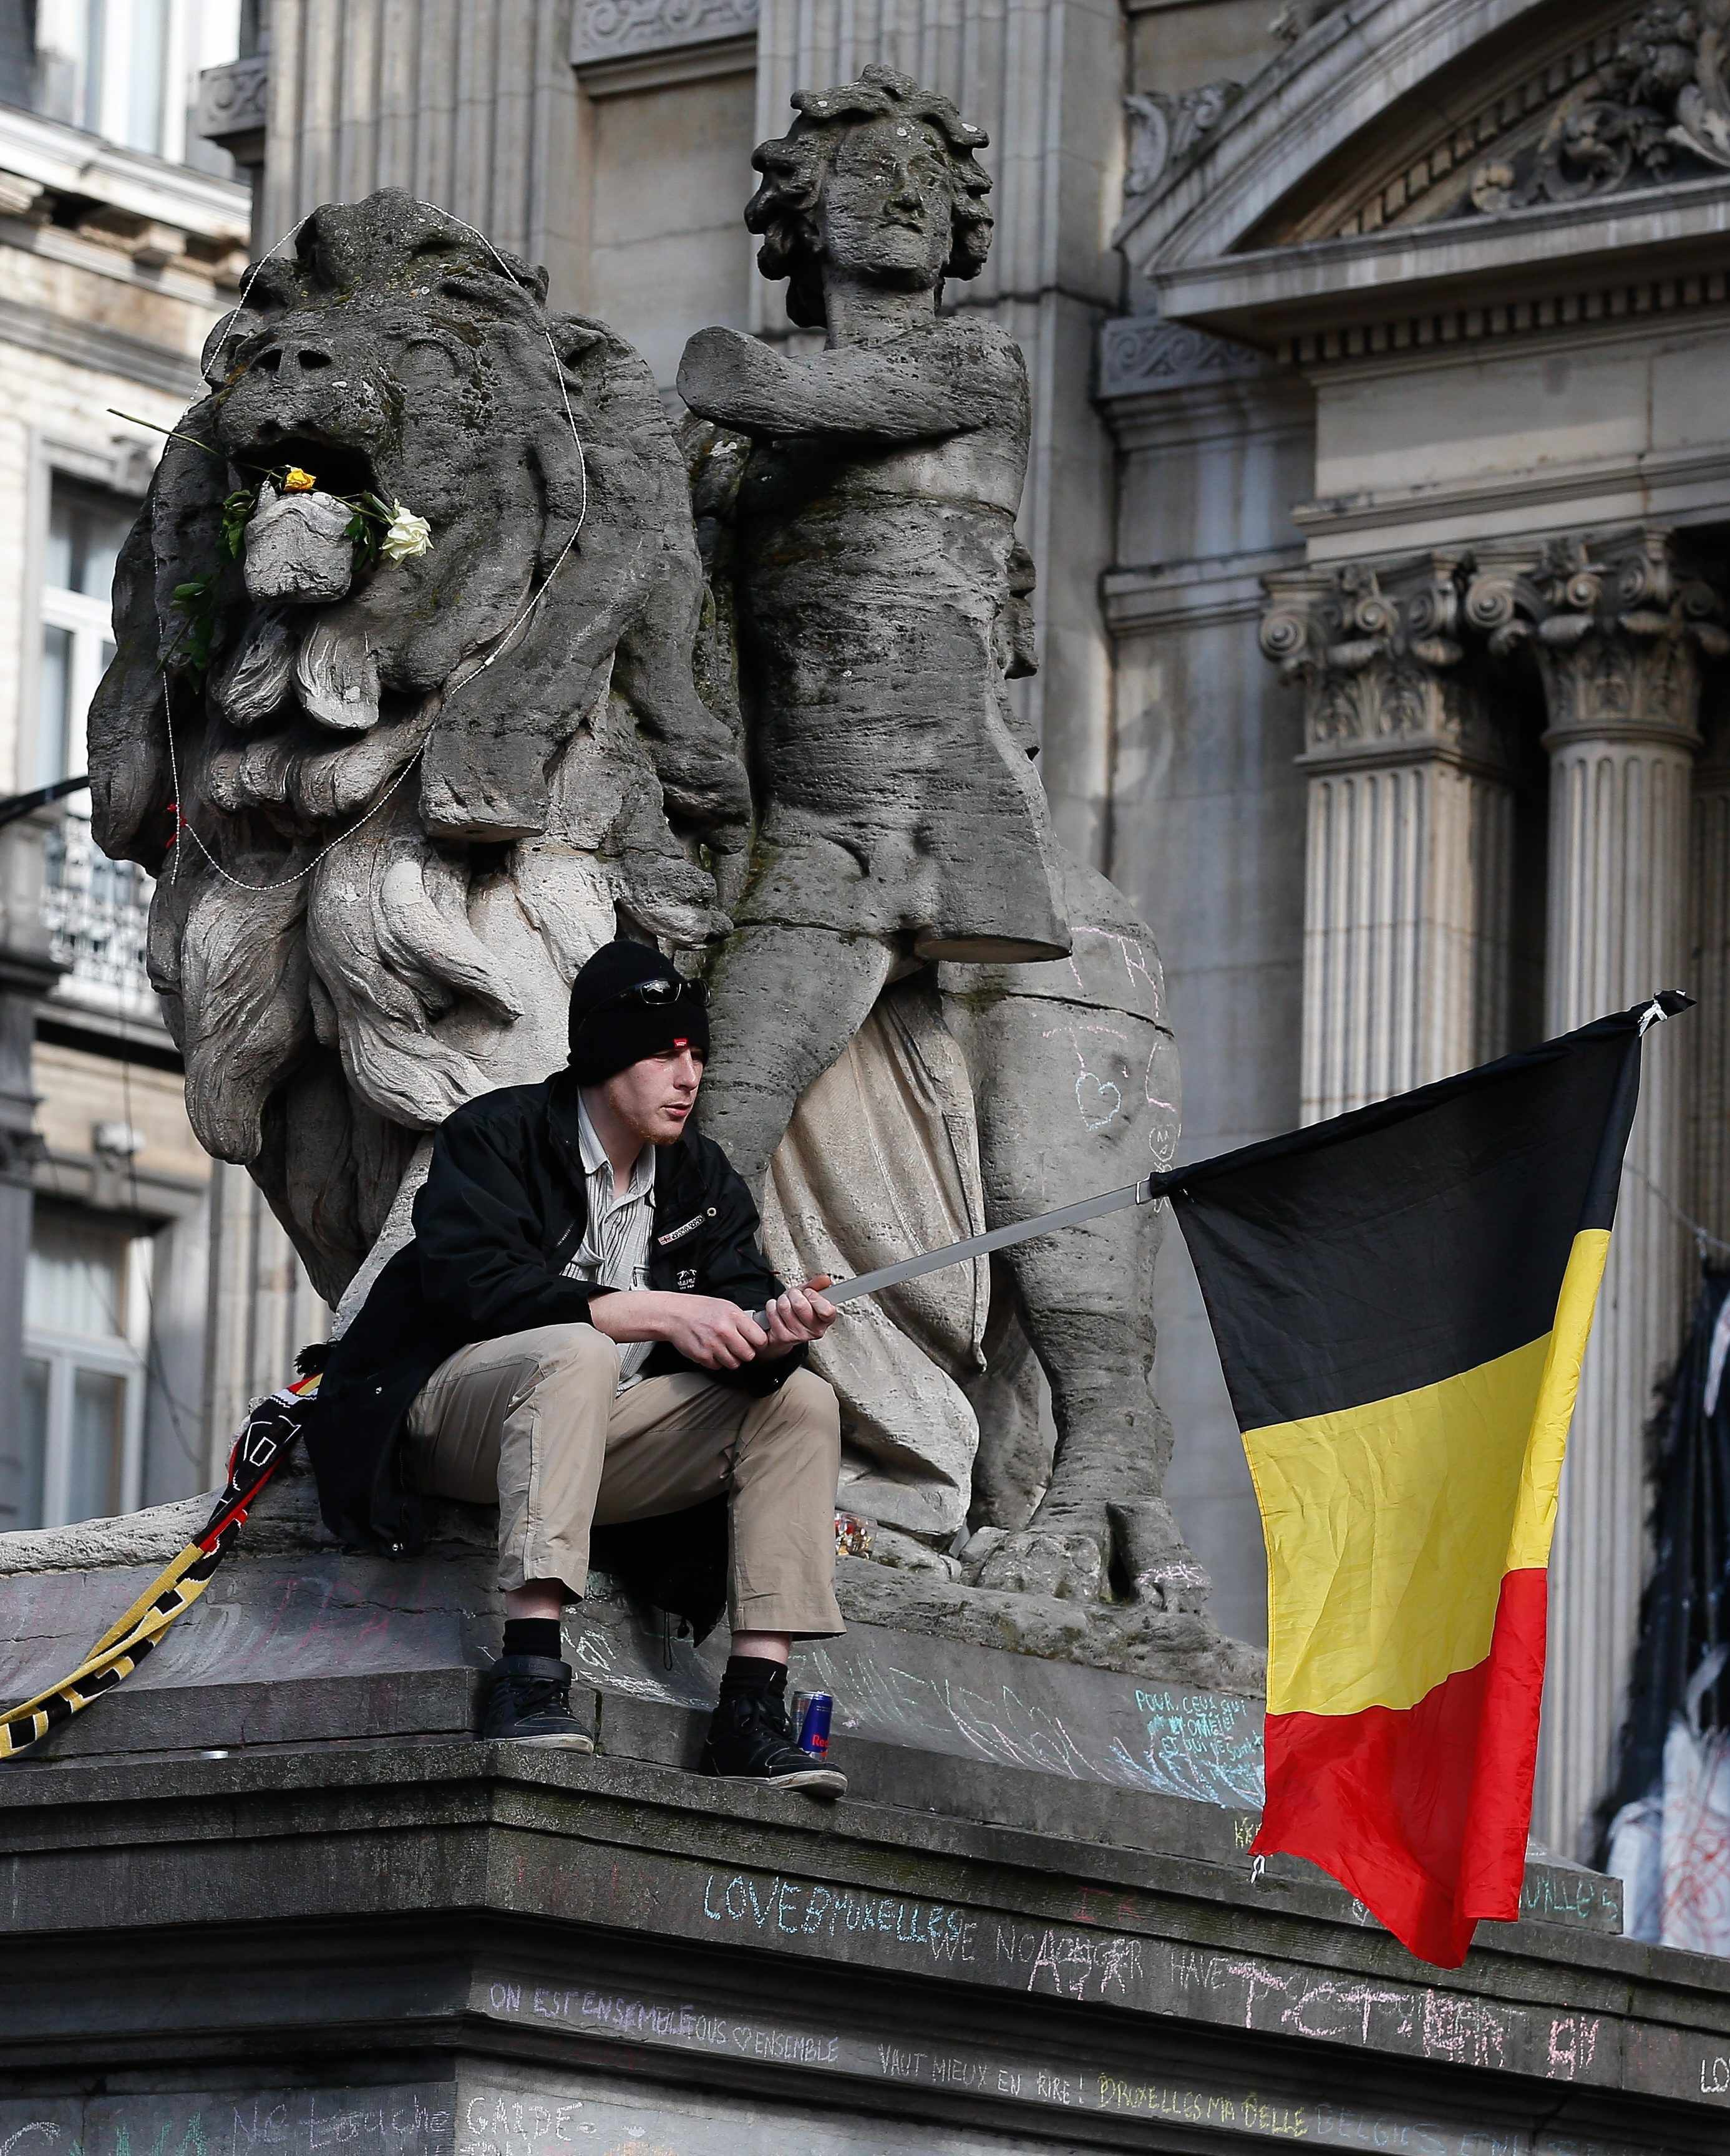 Tres inculpados más en Bélgica por terrorismo